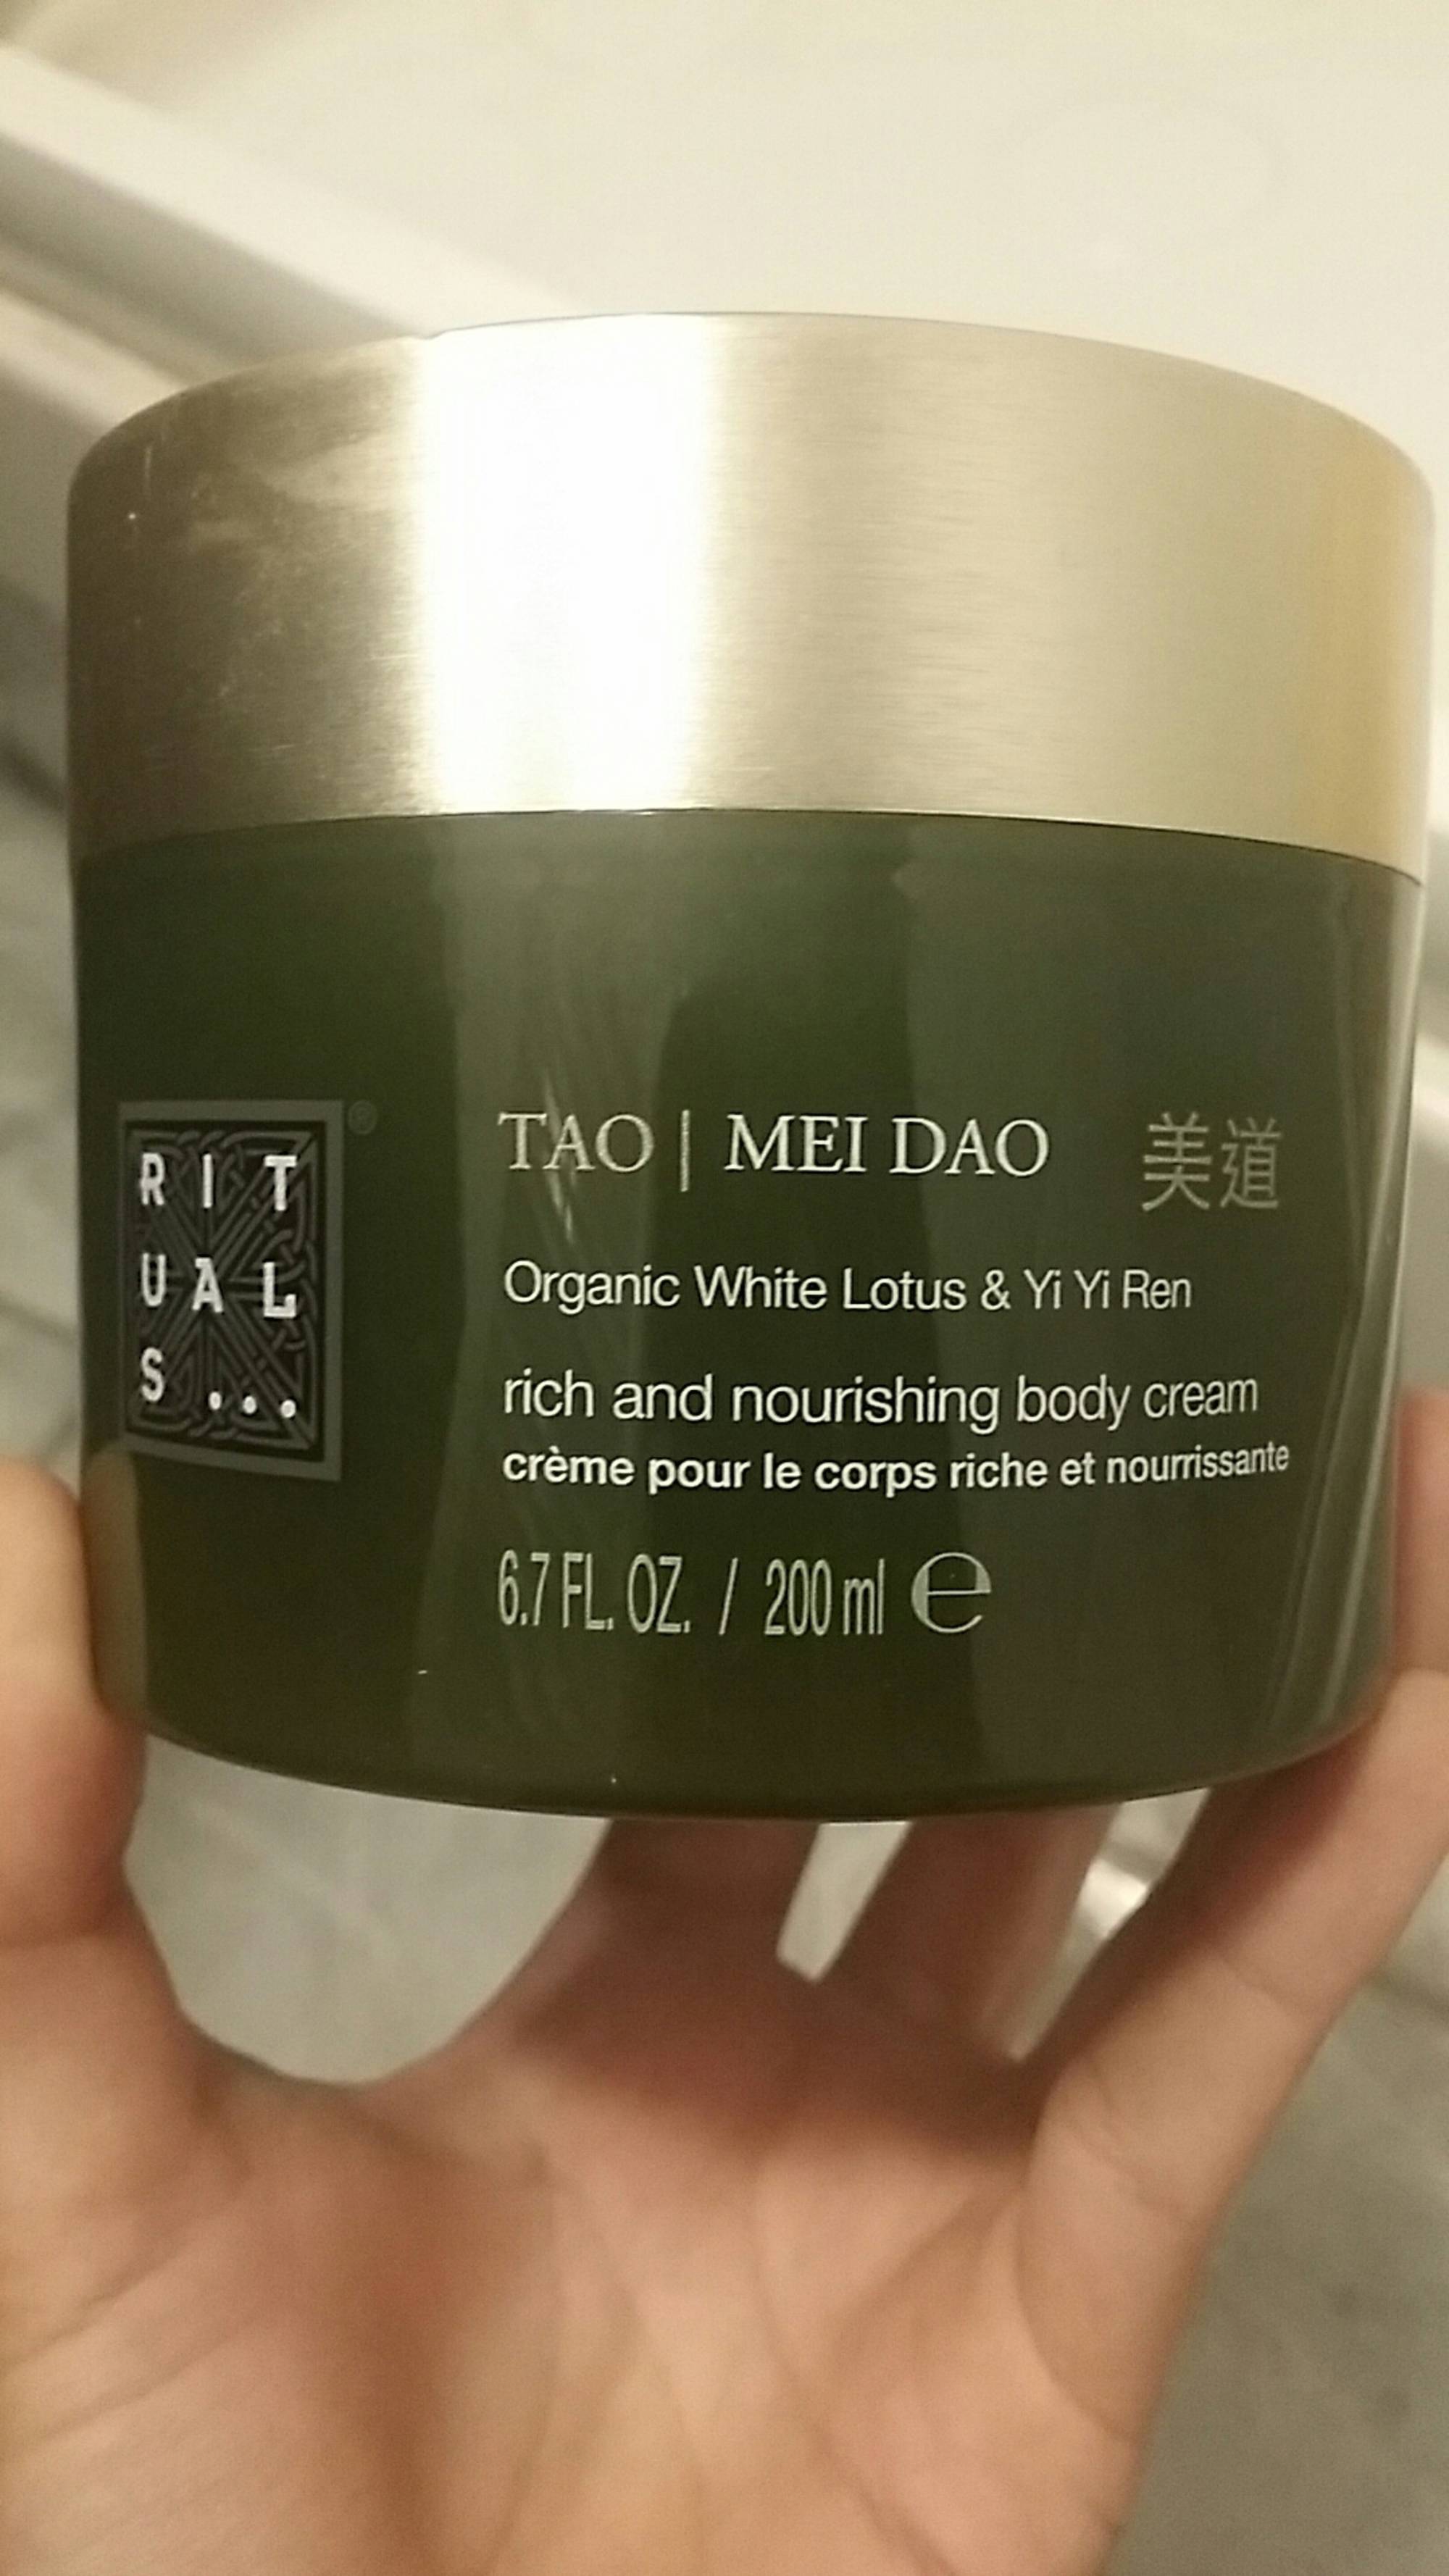 RITUALS - Tao mei dao - Crème pour le corps riche et nourrissante